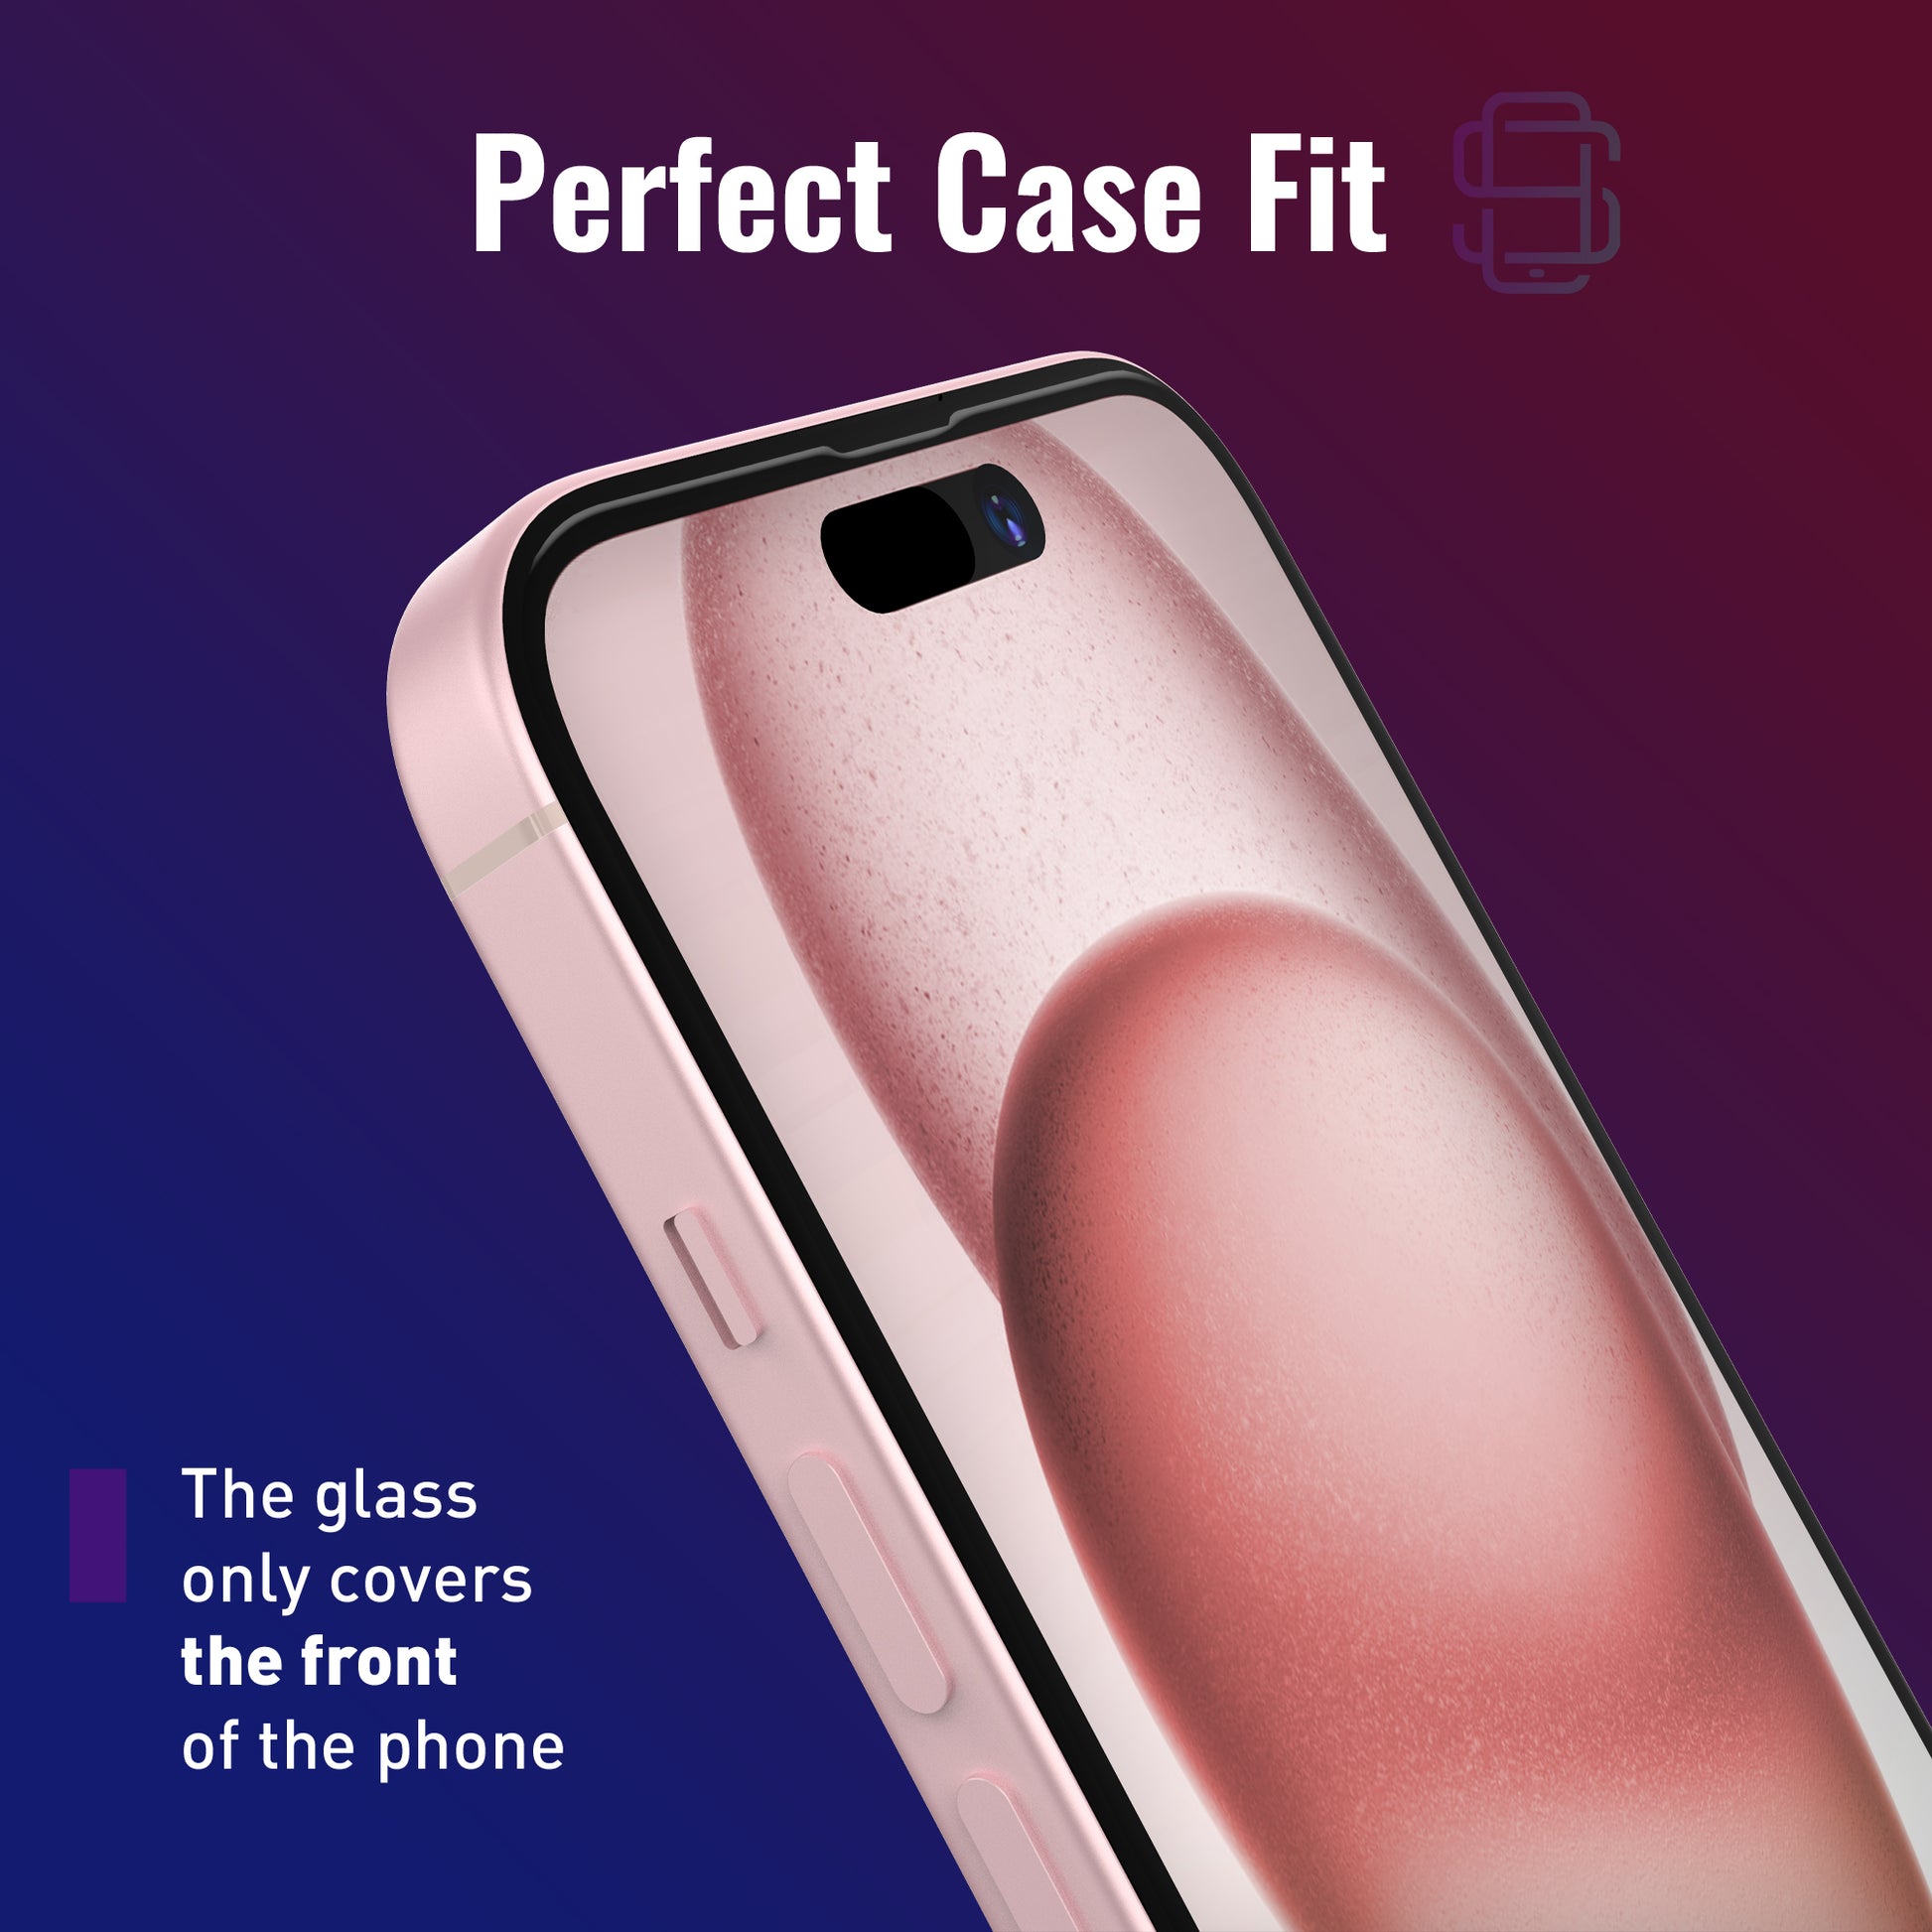  Defenslim Protector de pantalla para iPhone 13 mini (paquete de  2) con kit de instalación fácil de alinear automáticamente, vidrio templado  para iPhone 13 mini (5,4 pulgadas), nuevo cristal con tu 